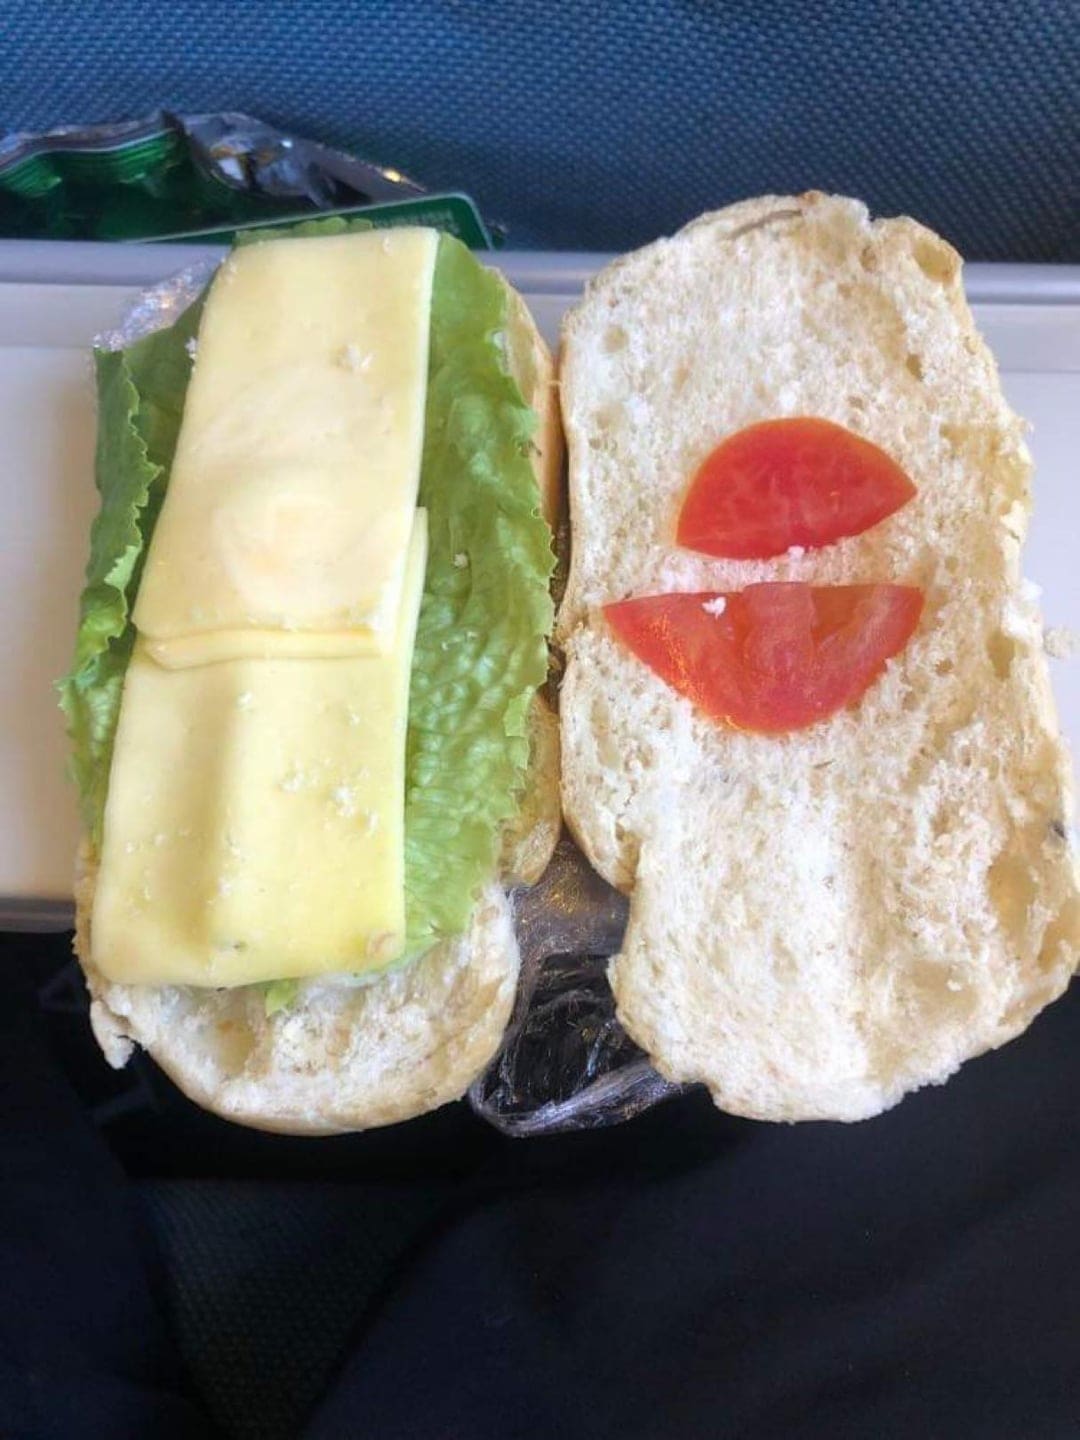 Аппетитный сэндвич не желаете?